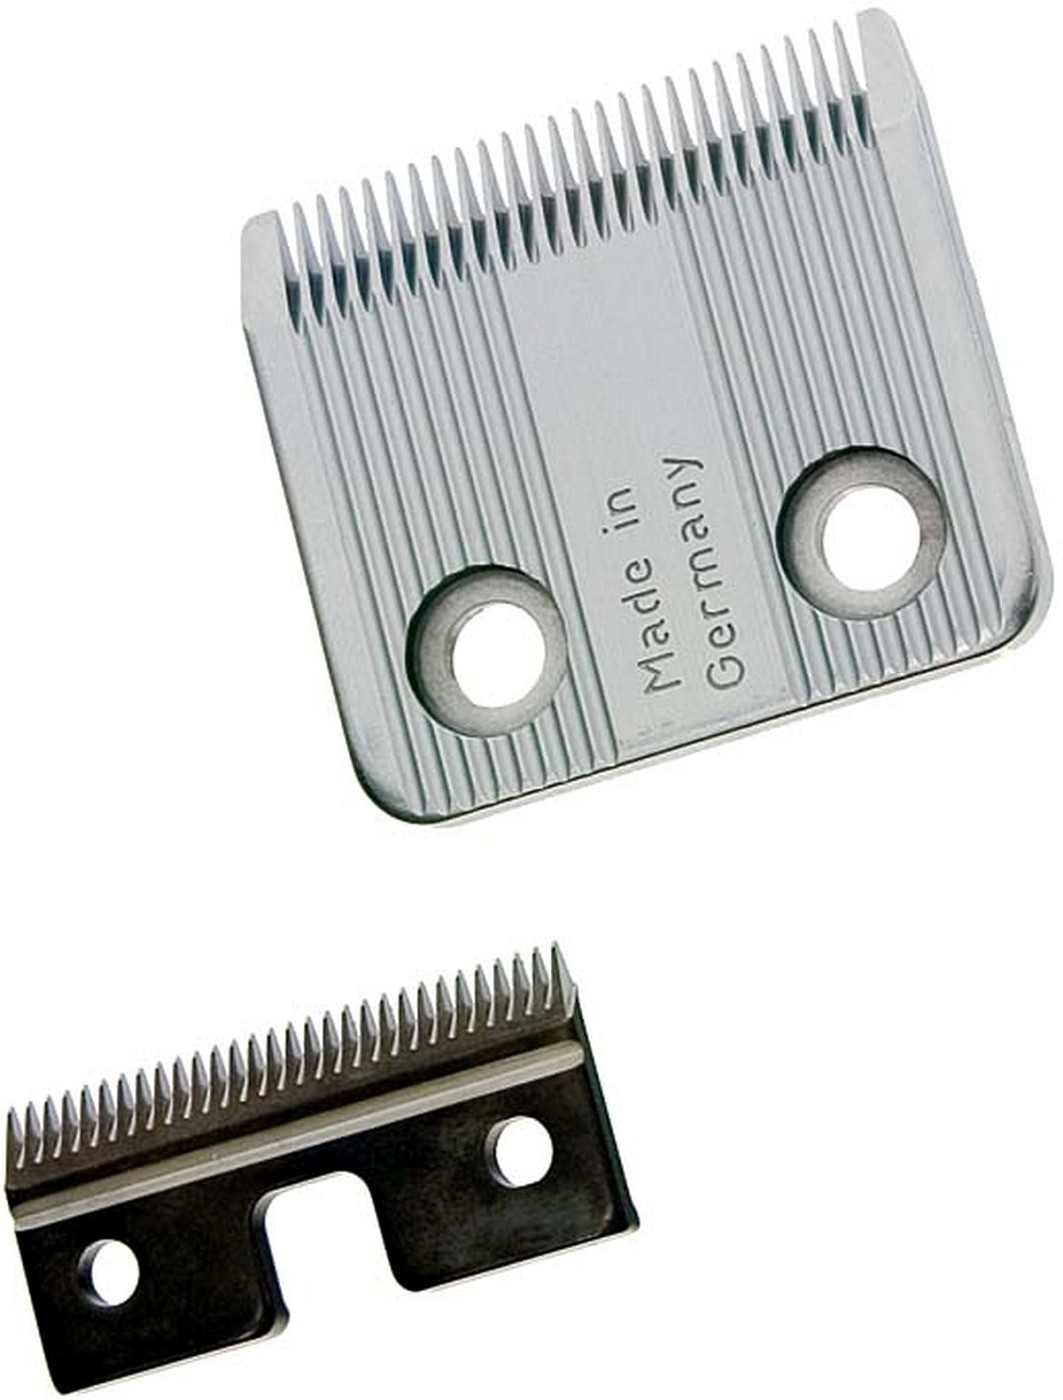  Moser AnimalLine Ersatzschneidsatz Standard  0,7 - 3 mm 